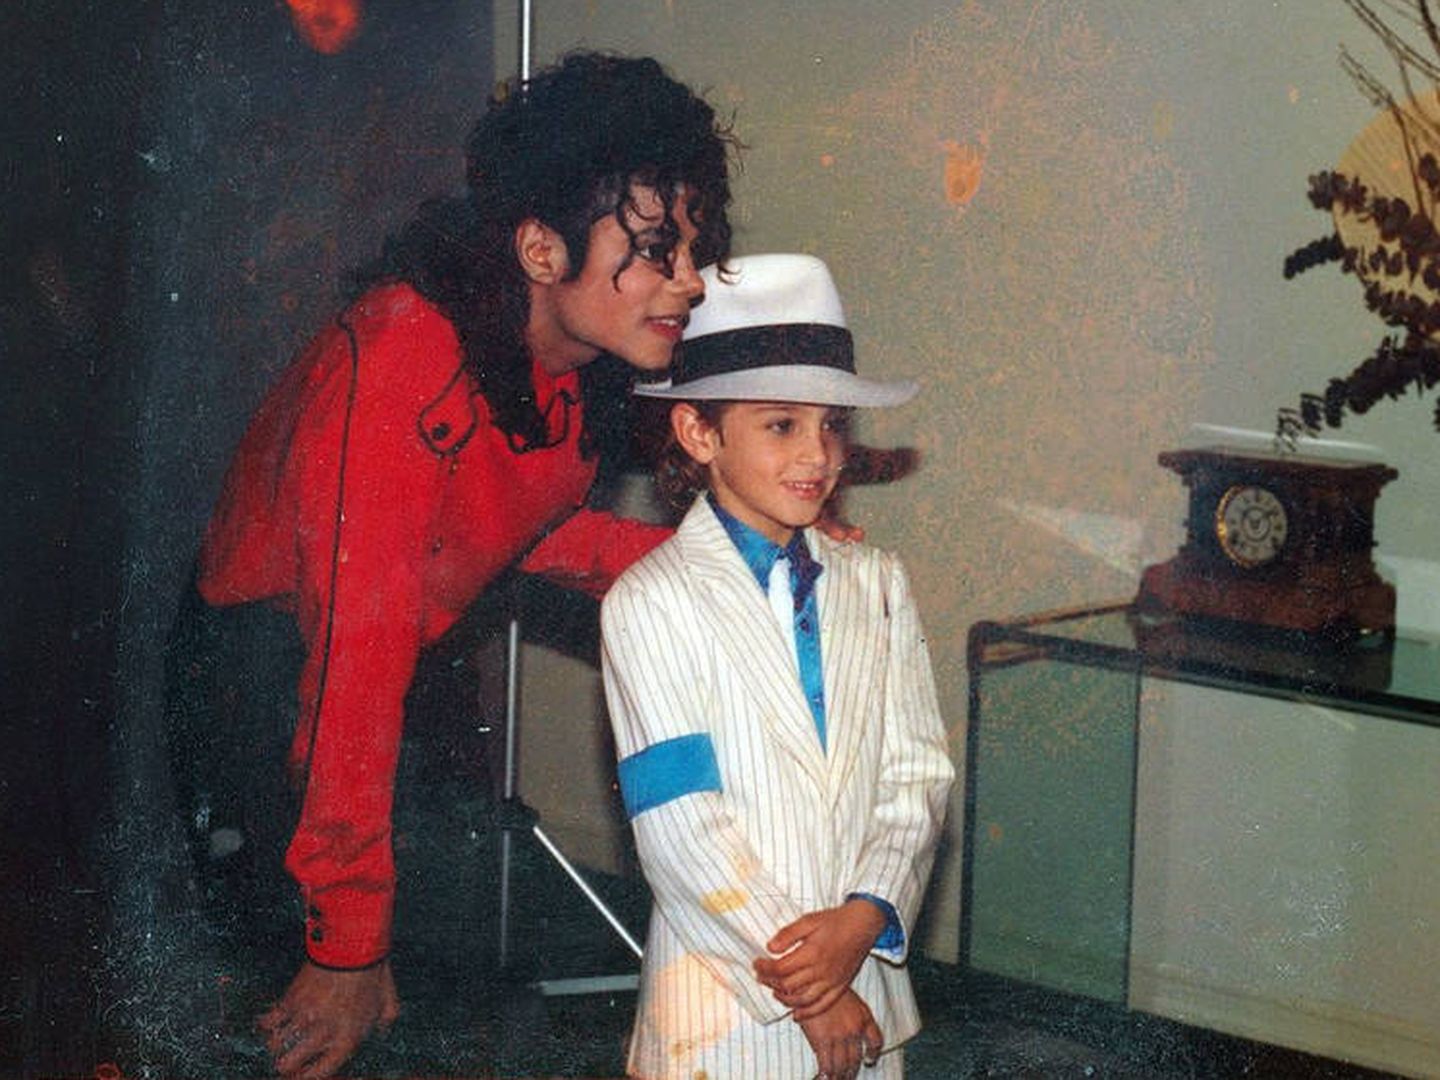 Imagen de 'Leaving Neverland' que muestra a Michael Jackson en casa del niño Wade Robson. (EFE)